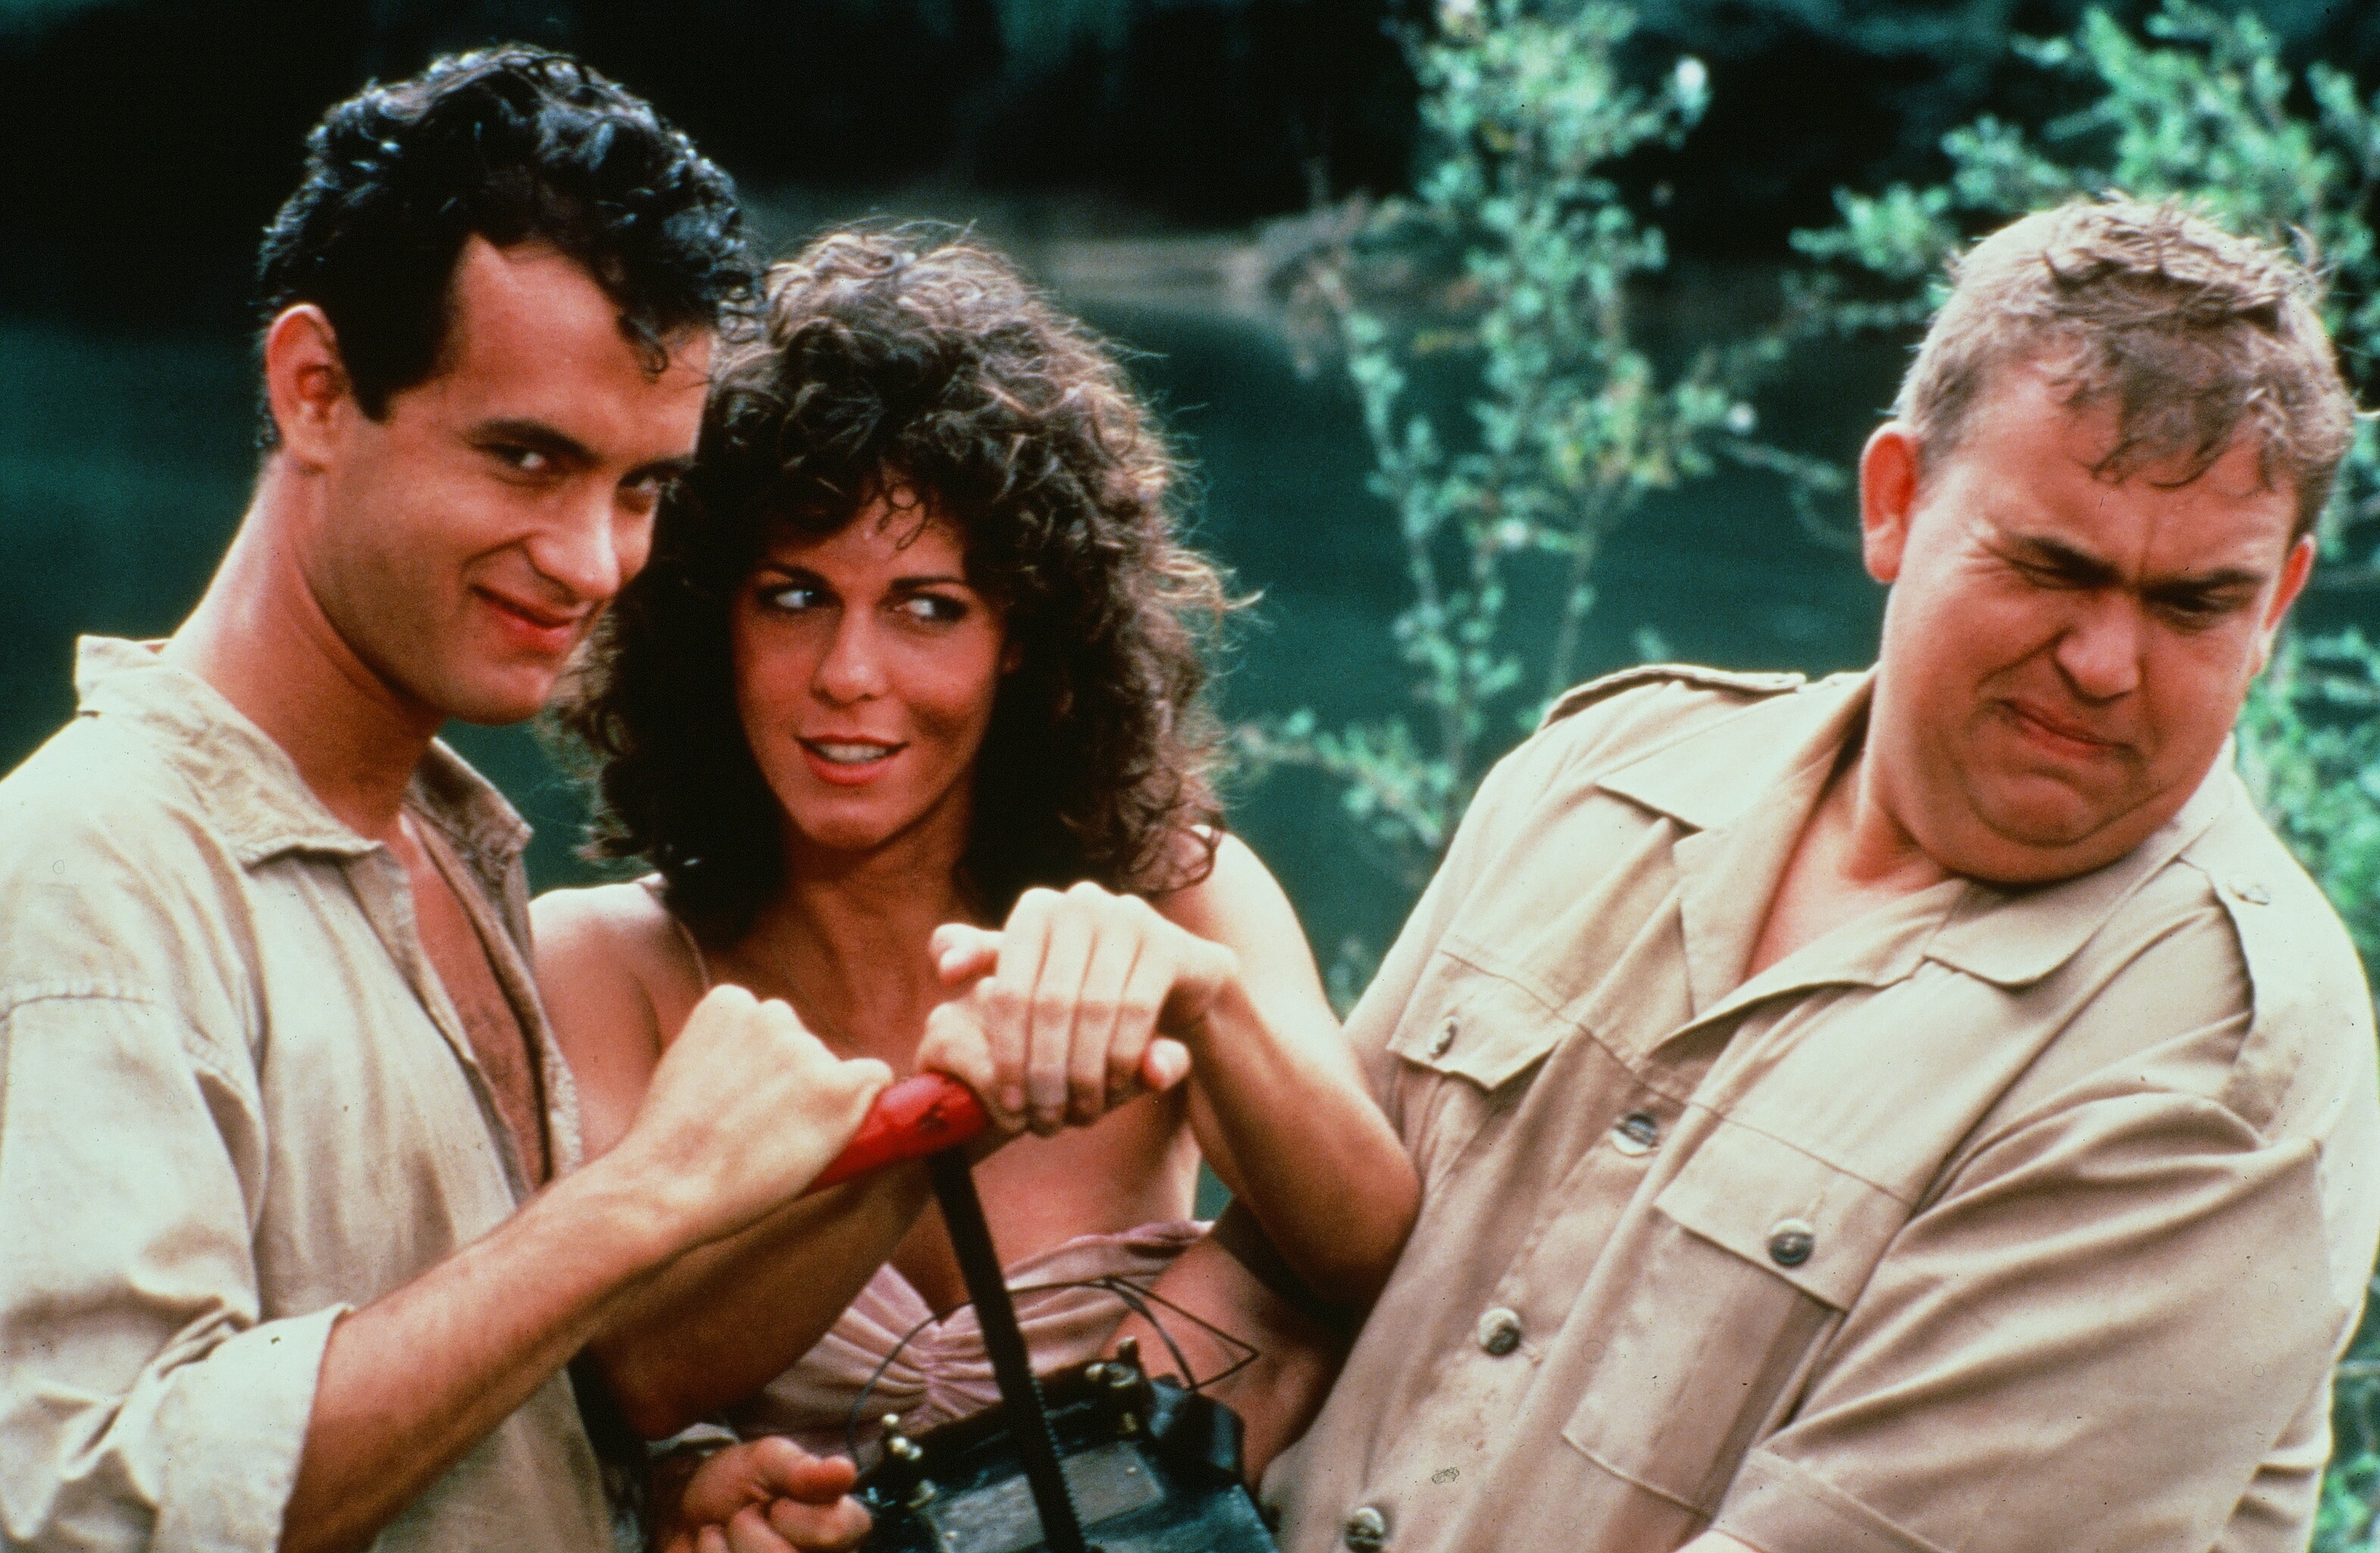 Tom Hanks, Rita Wilson et John Candy posent ensemble sur le tournage du film "Toujours prêts" vers 1984 | Source : Getty Images